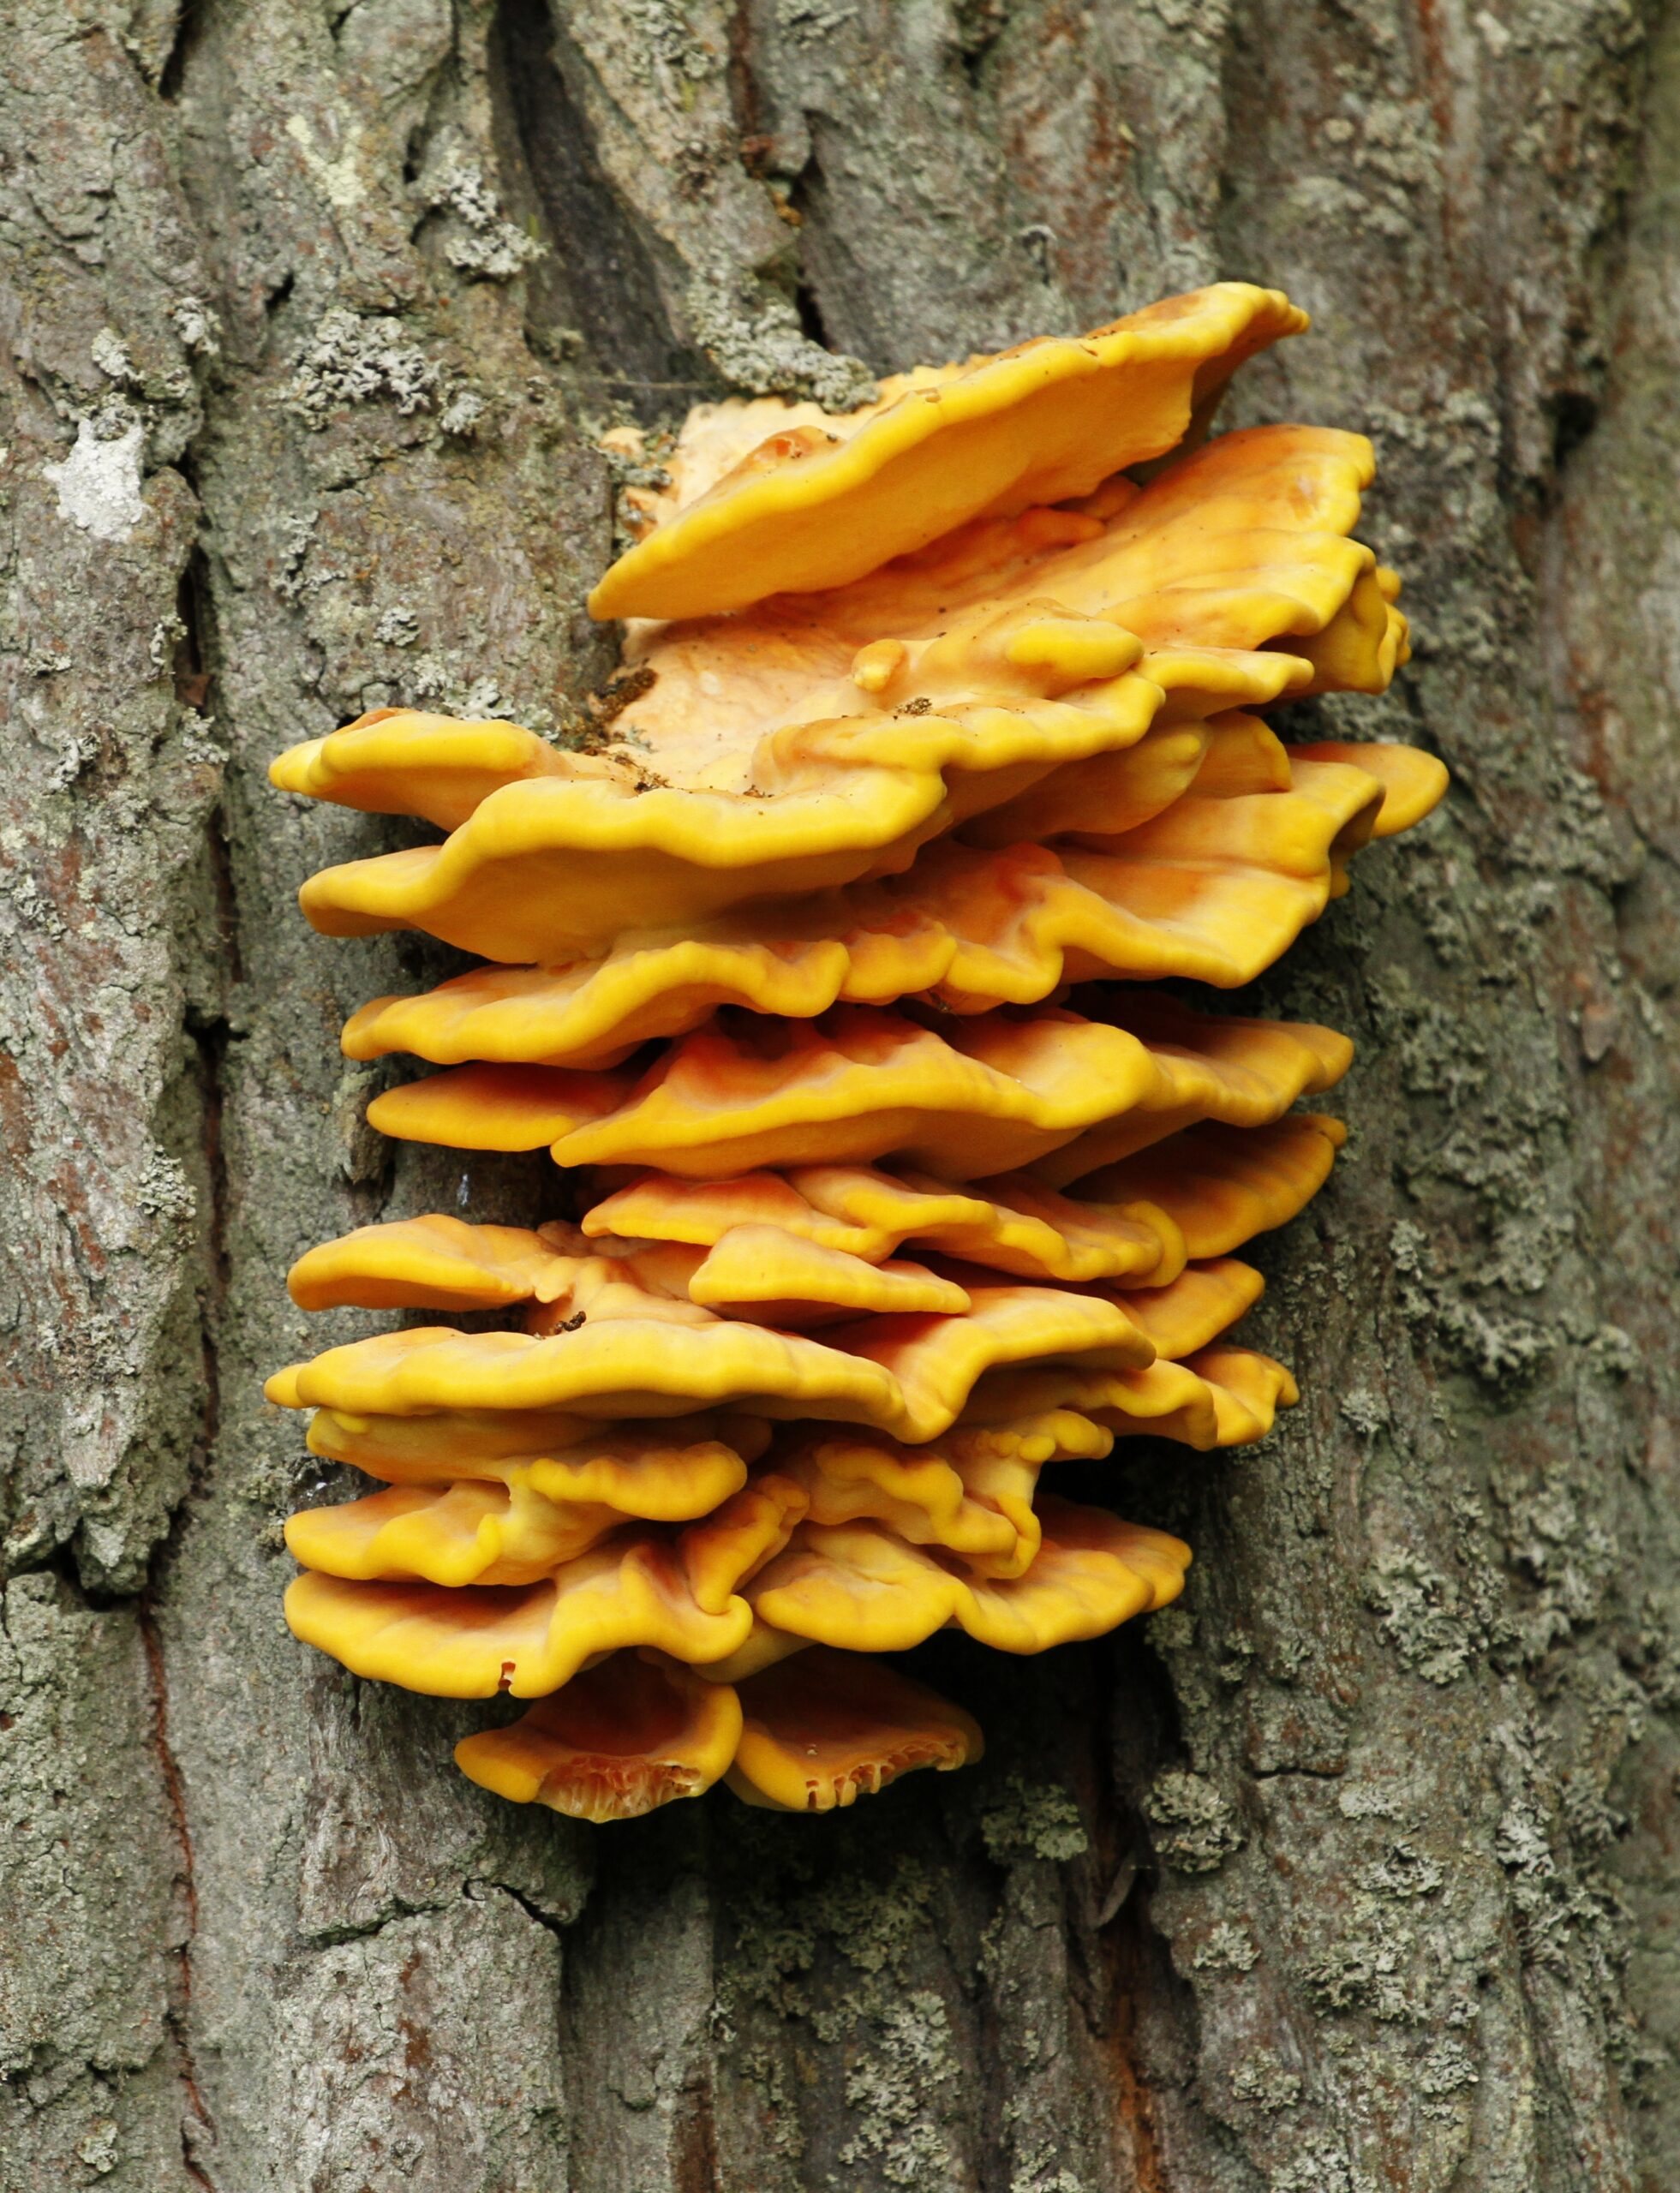 Laetiporus sulphureus bracket fungus